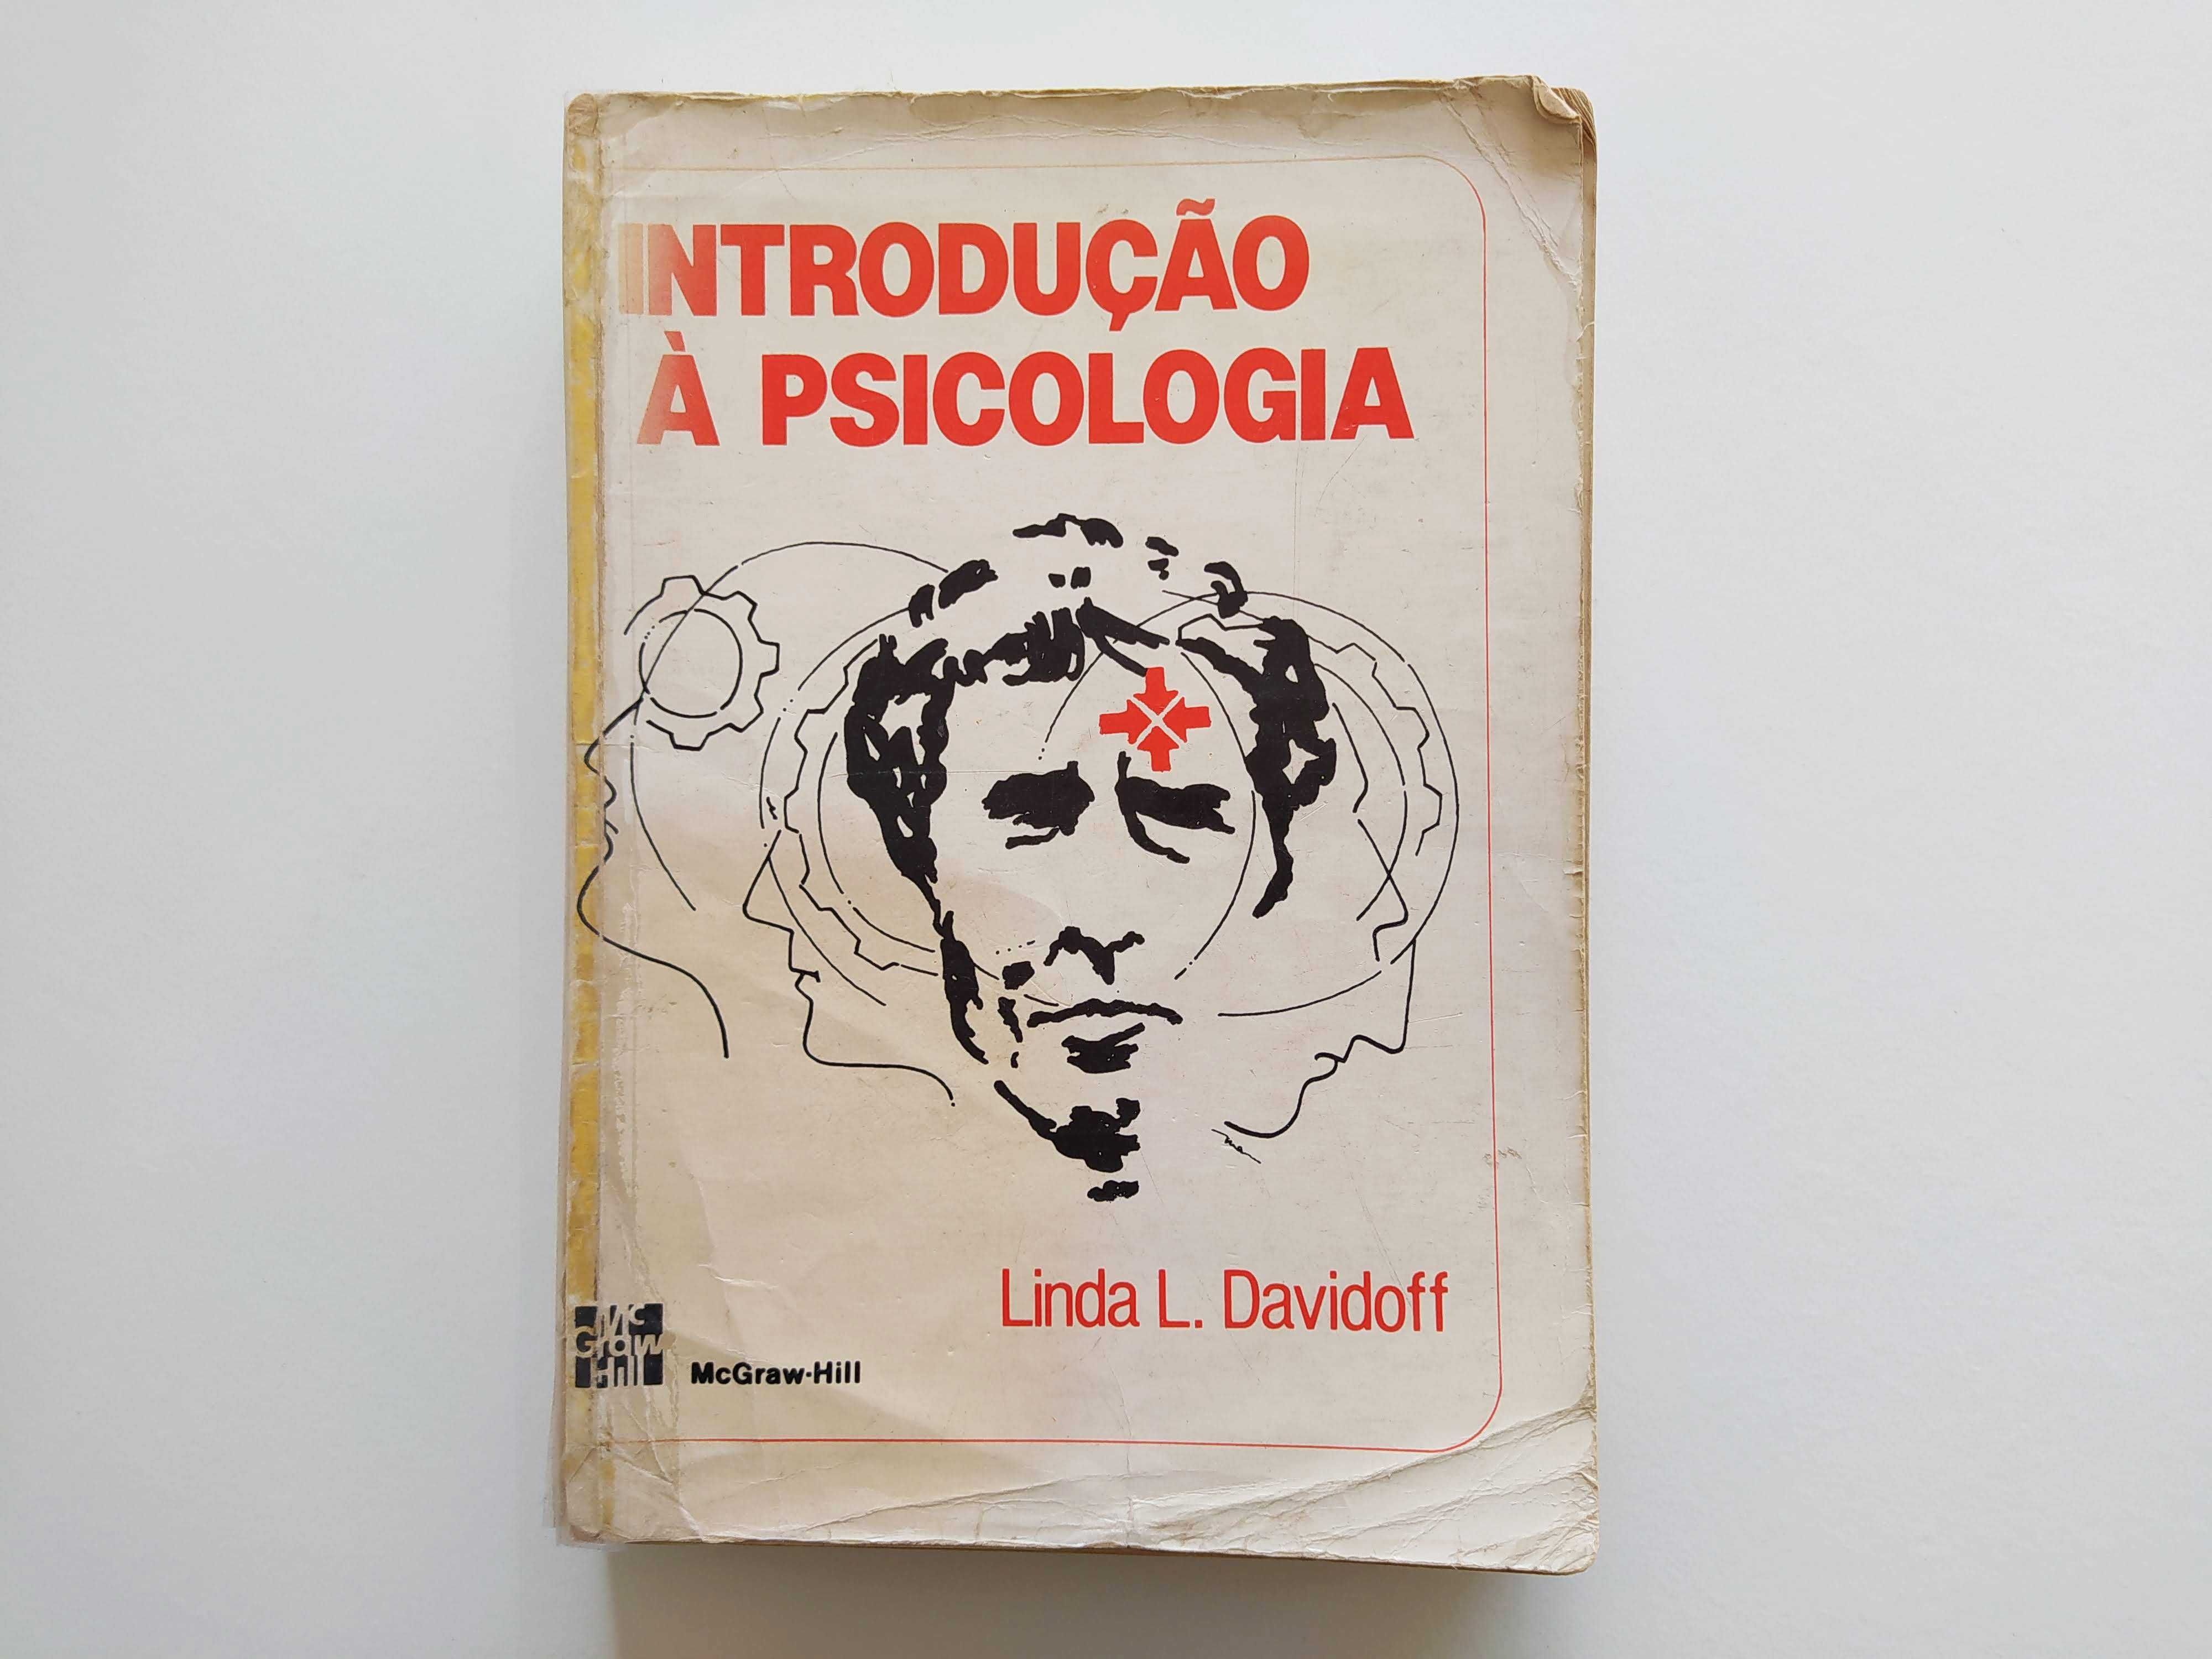 Livros s/ INTRODUÇÃO À PSICOLOGIA (desde 4€)